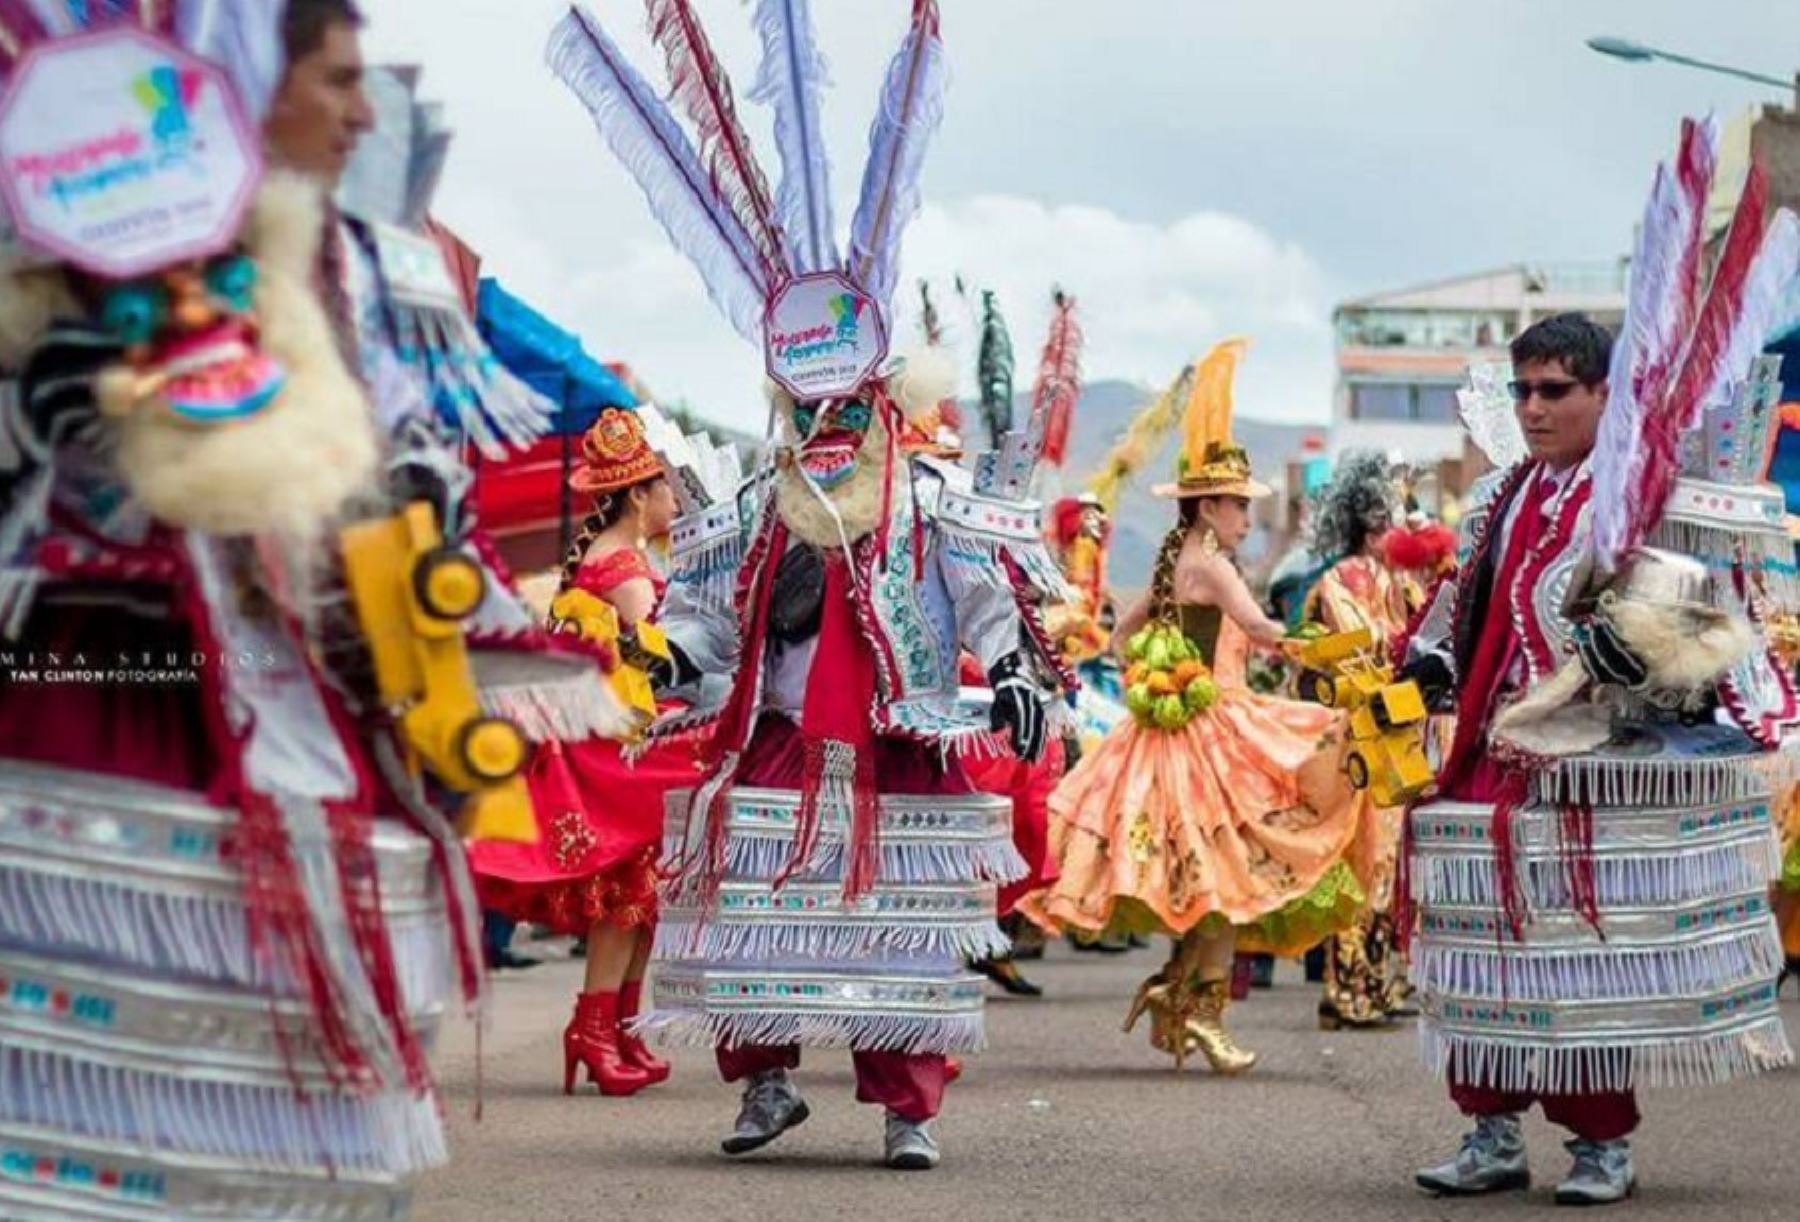 El domingo 11 de febrero tendrá lugar una de las actividades más emblemáticas de la Festividad en honor de la Virgen de la Candelaria en Puno: el concurso de trajes de luces.